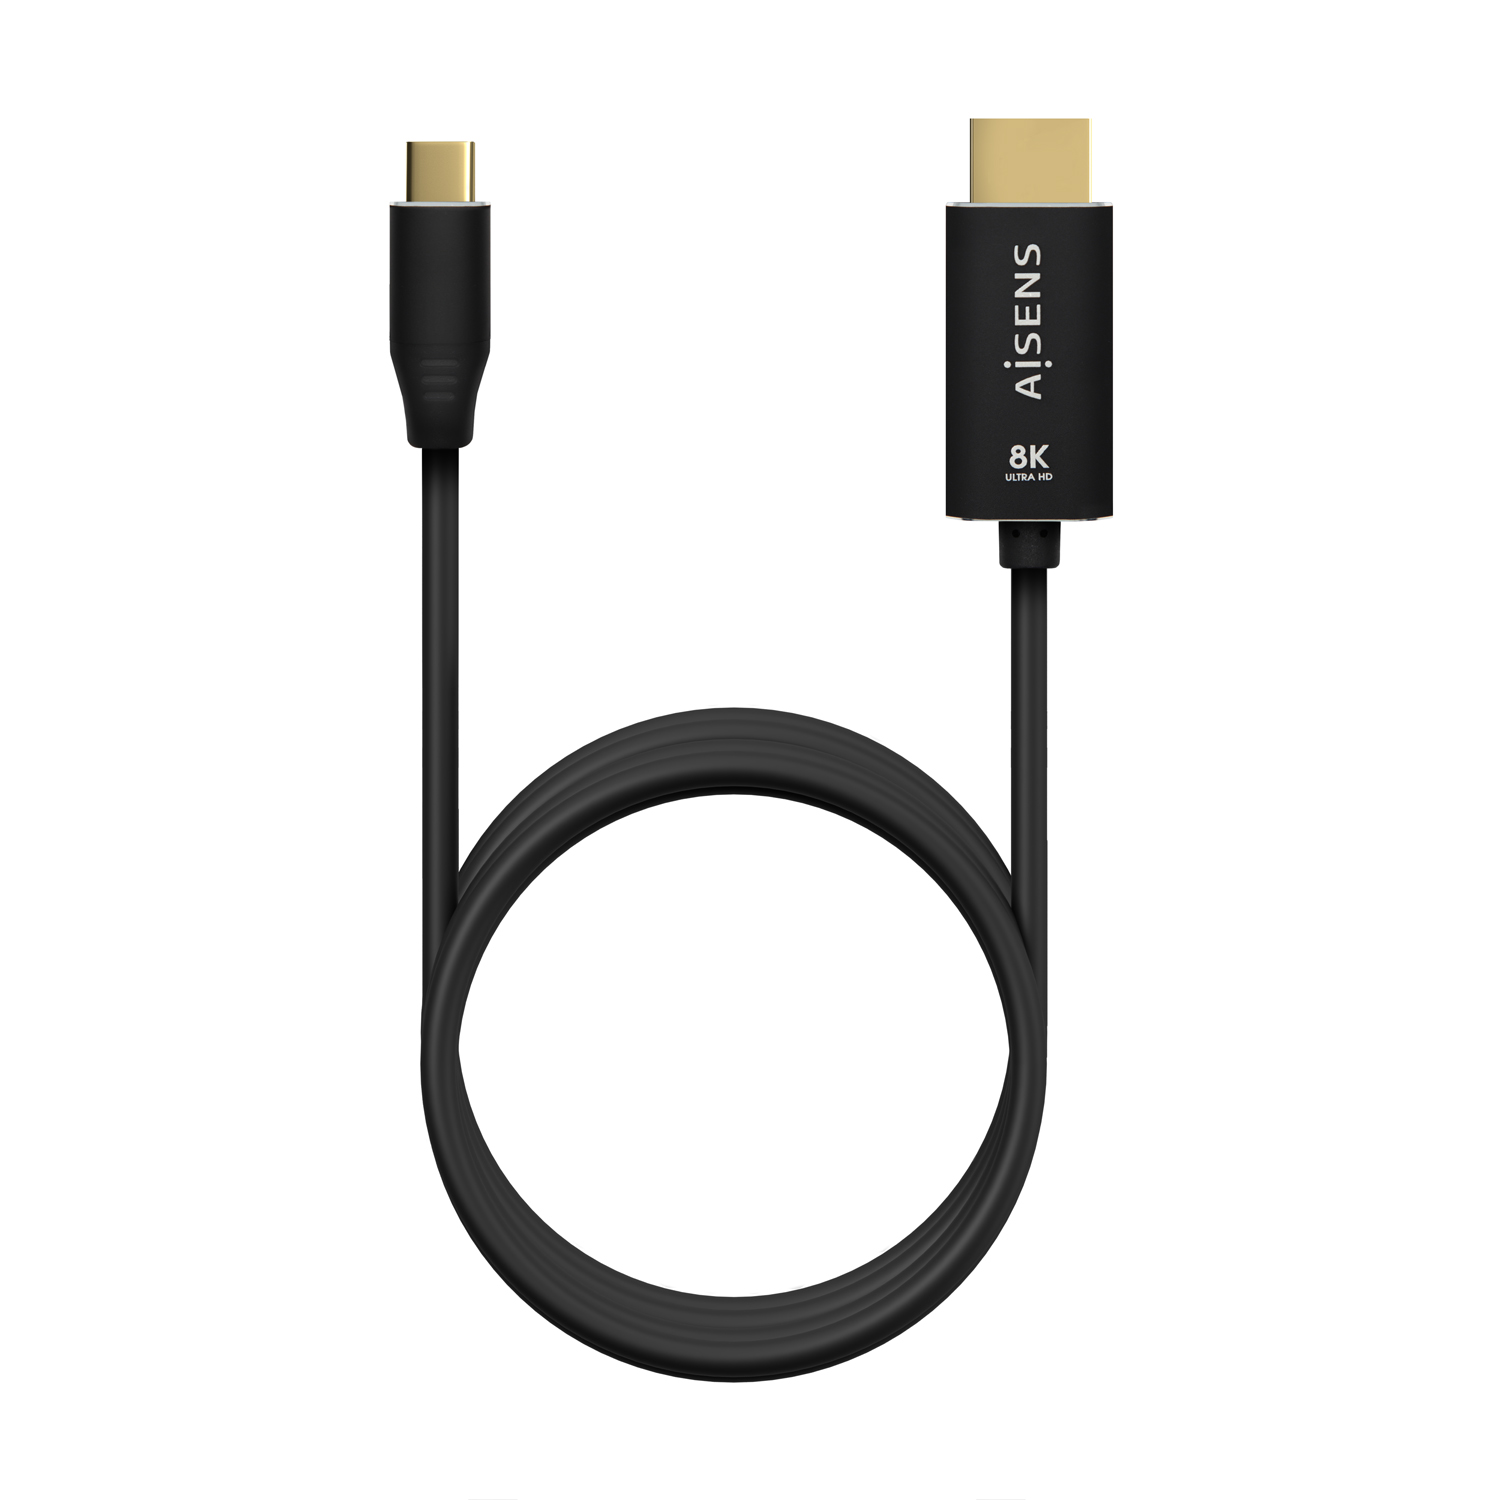 El nuevo estándar HDMI le da la bienvenida al USB-C de forma nativa y sin  adaptadores